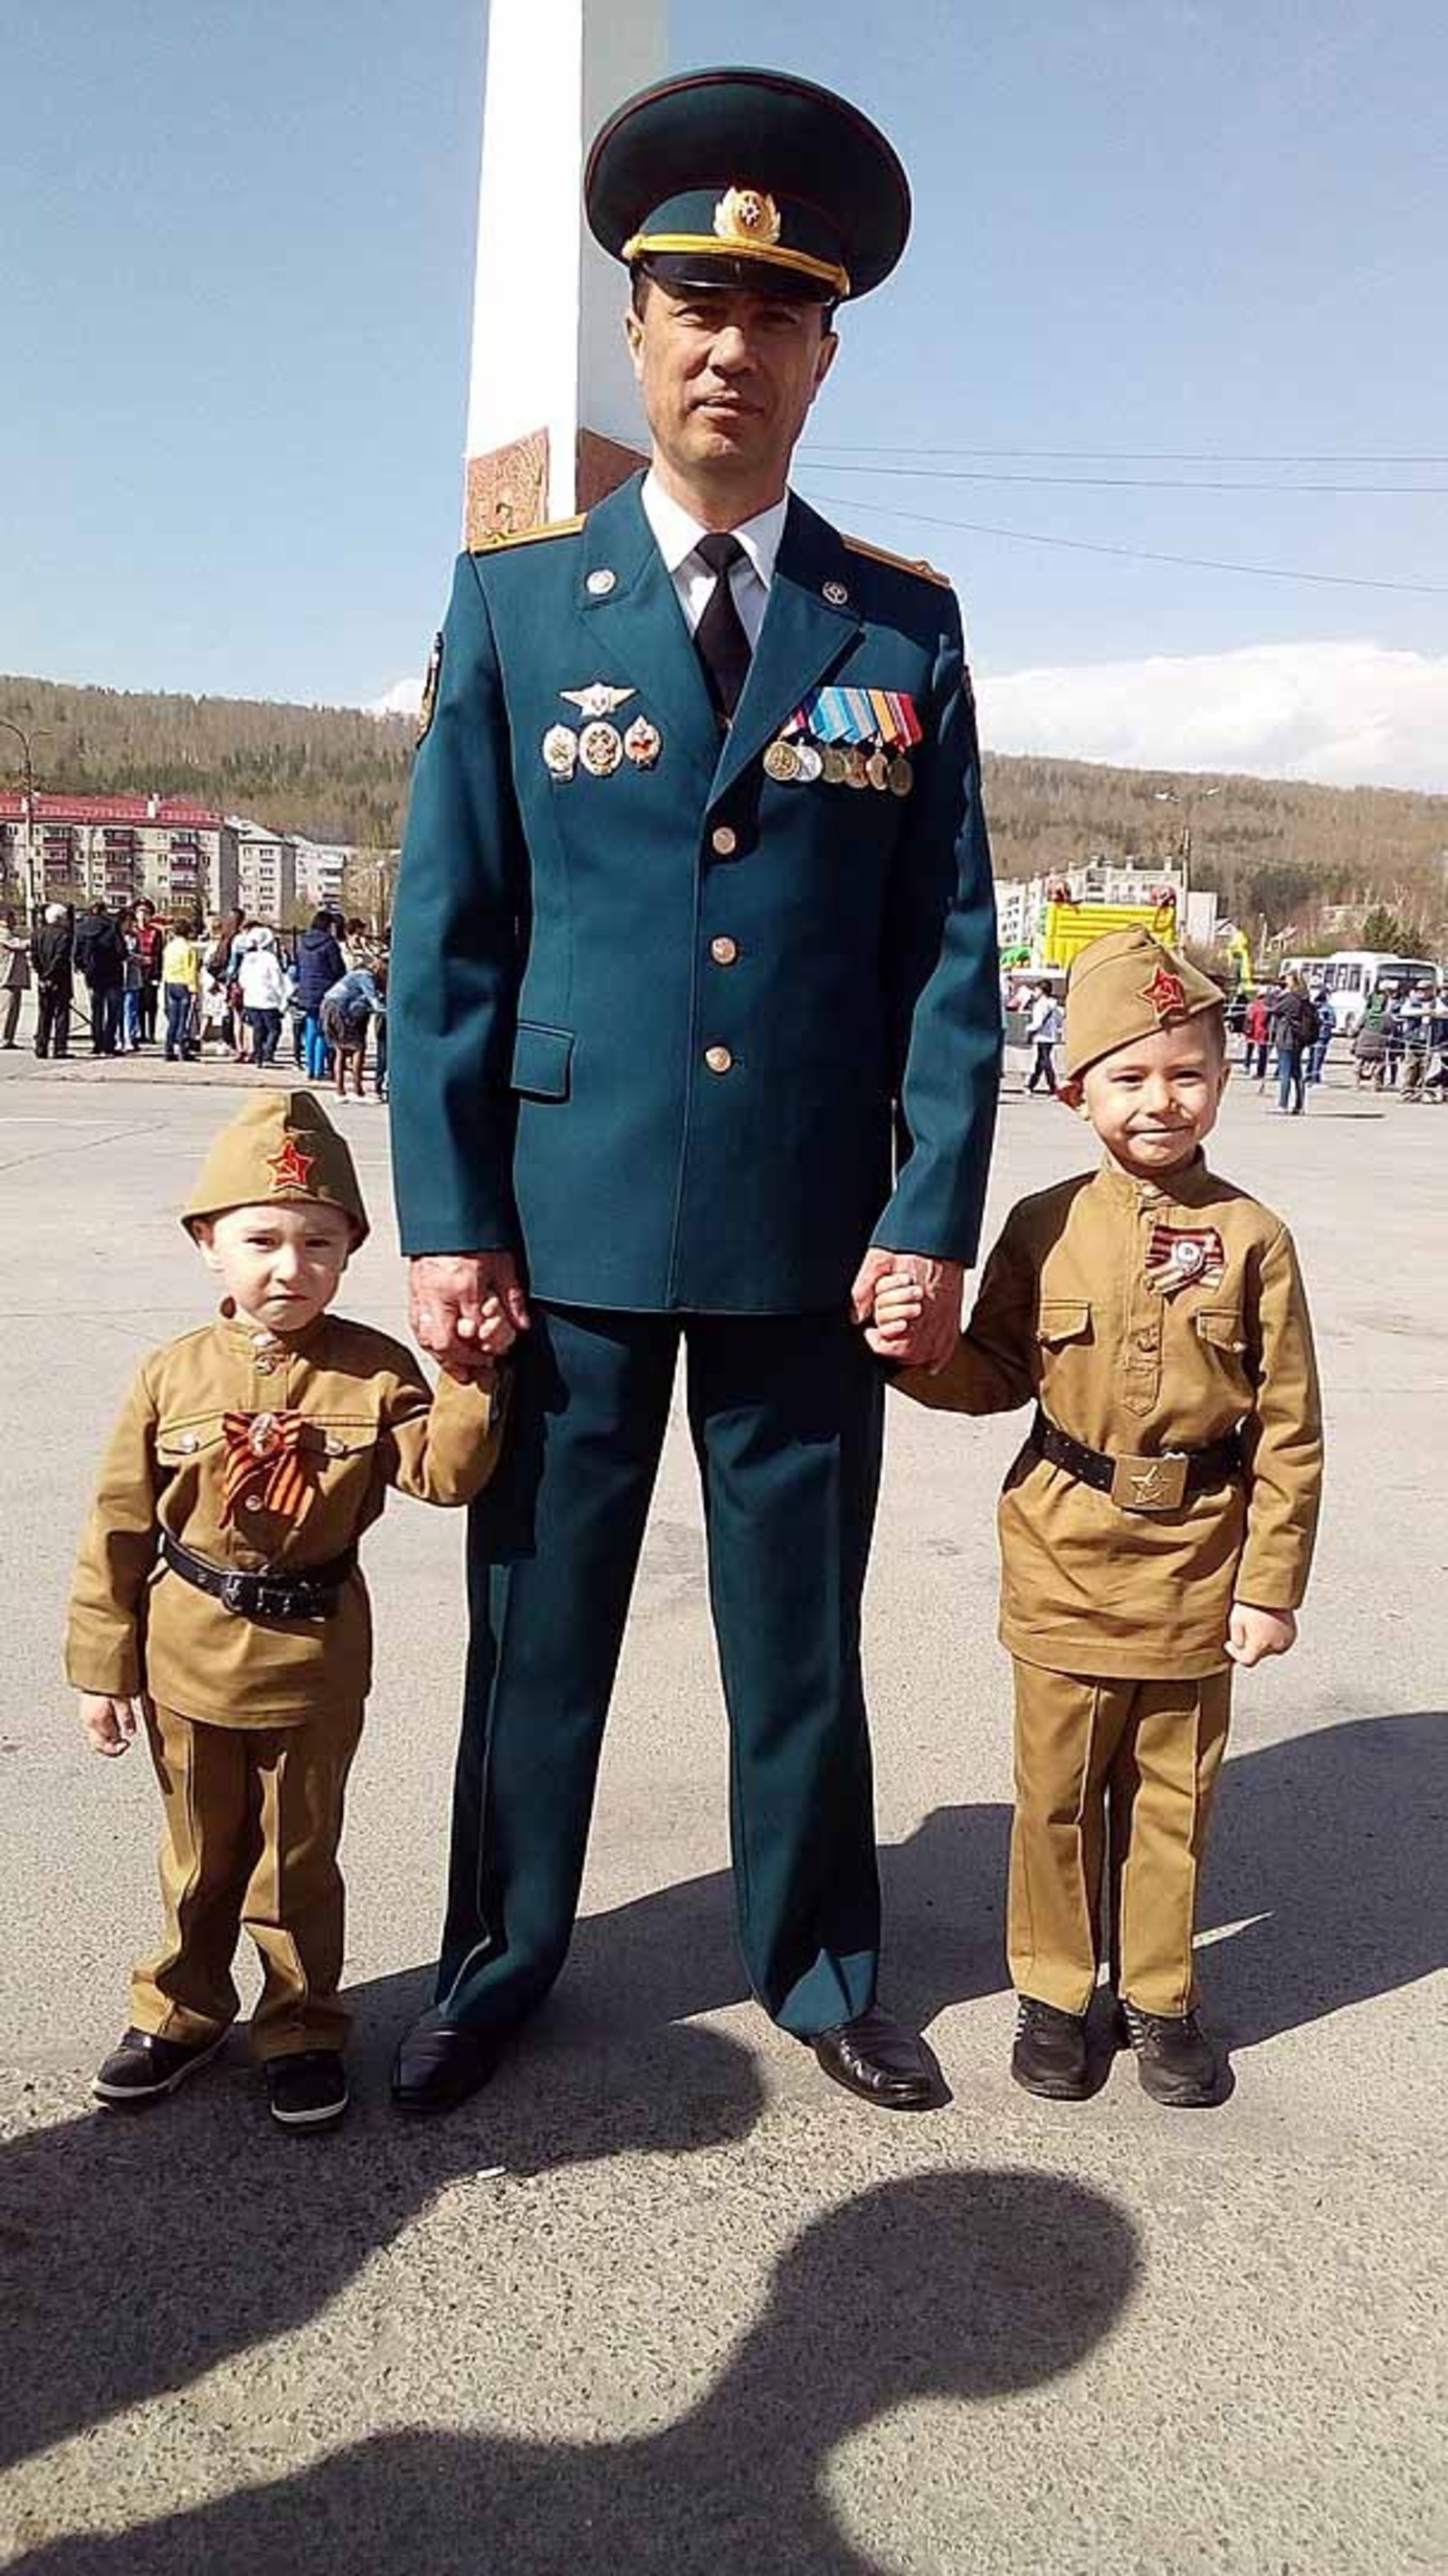 Аниса Янбаева  Фанис Шахманов с сыновьями. Эрик с Давидом уже знают, кем хотят стать. Пожарными, как их отец.